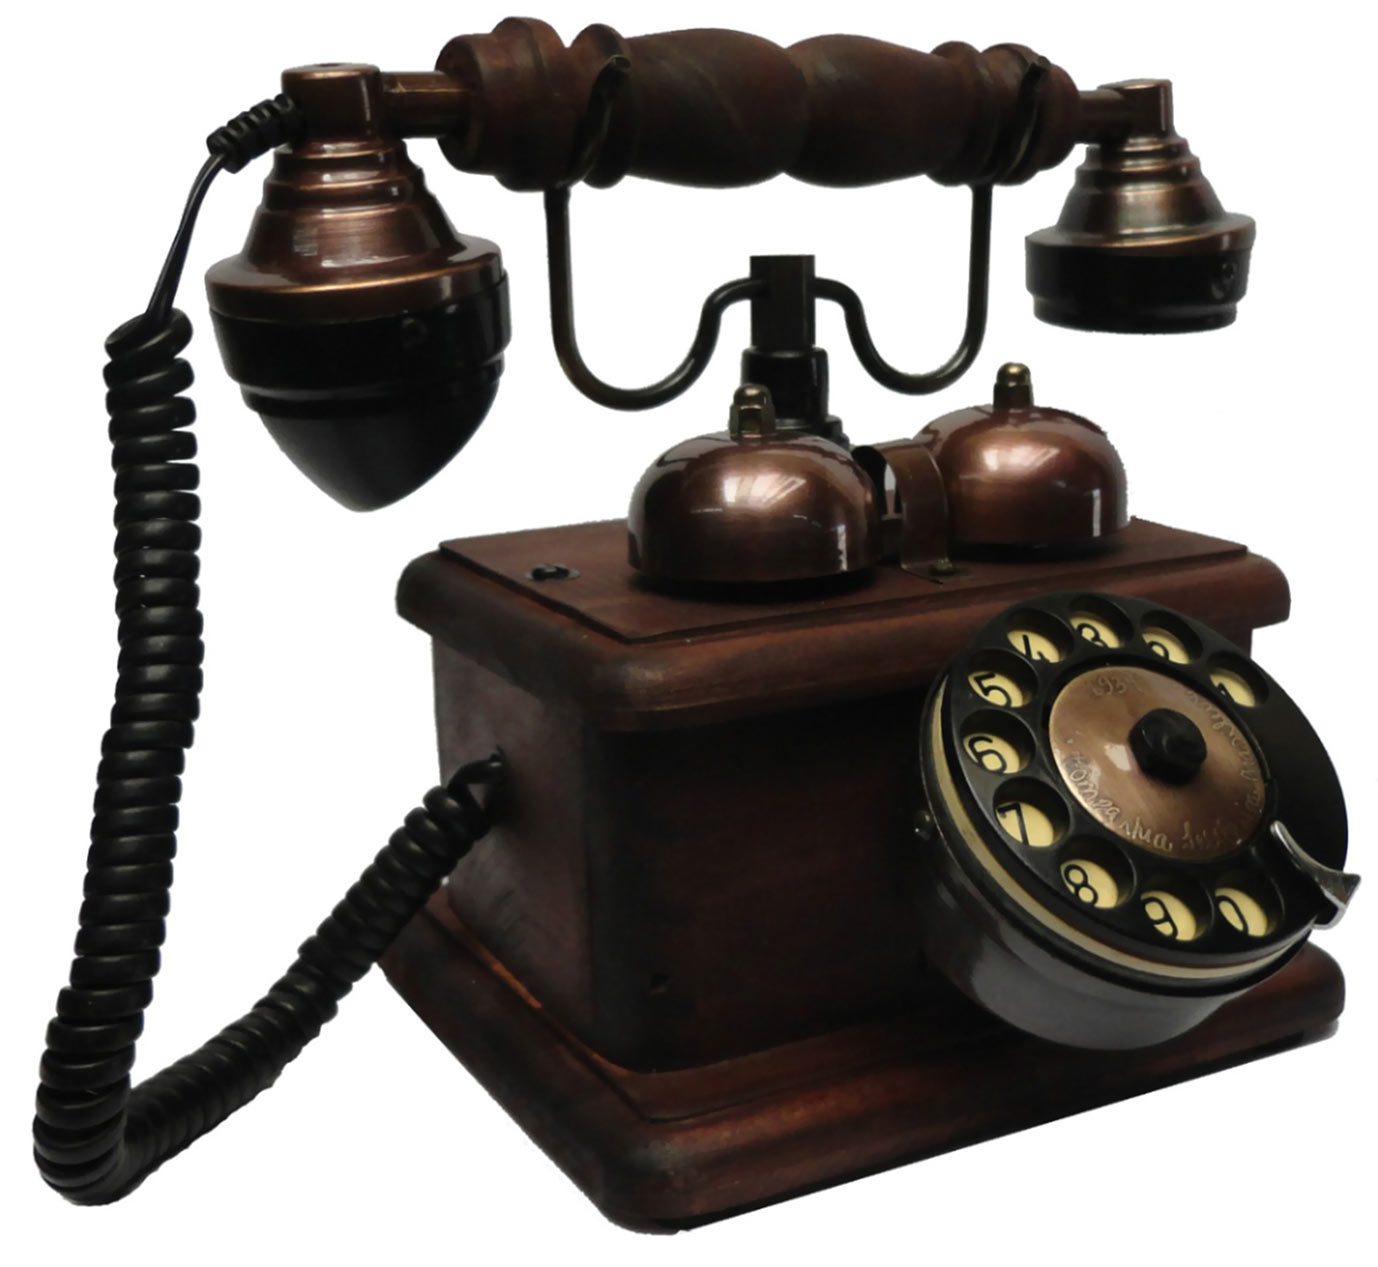 telefone-antigo